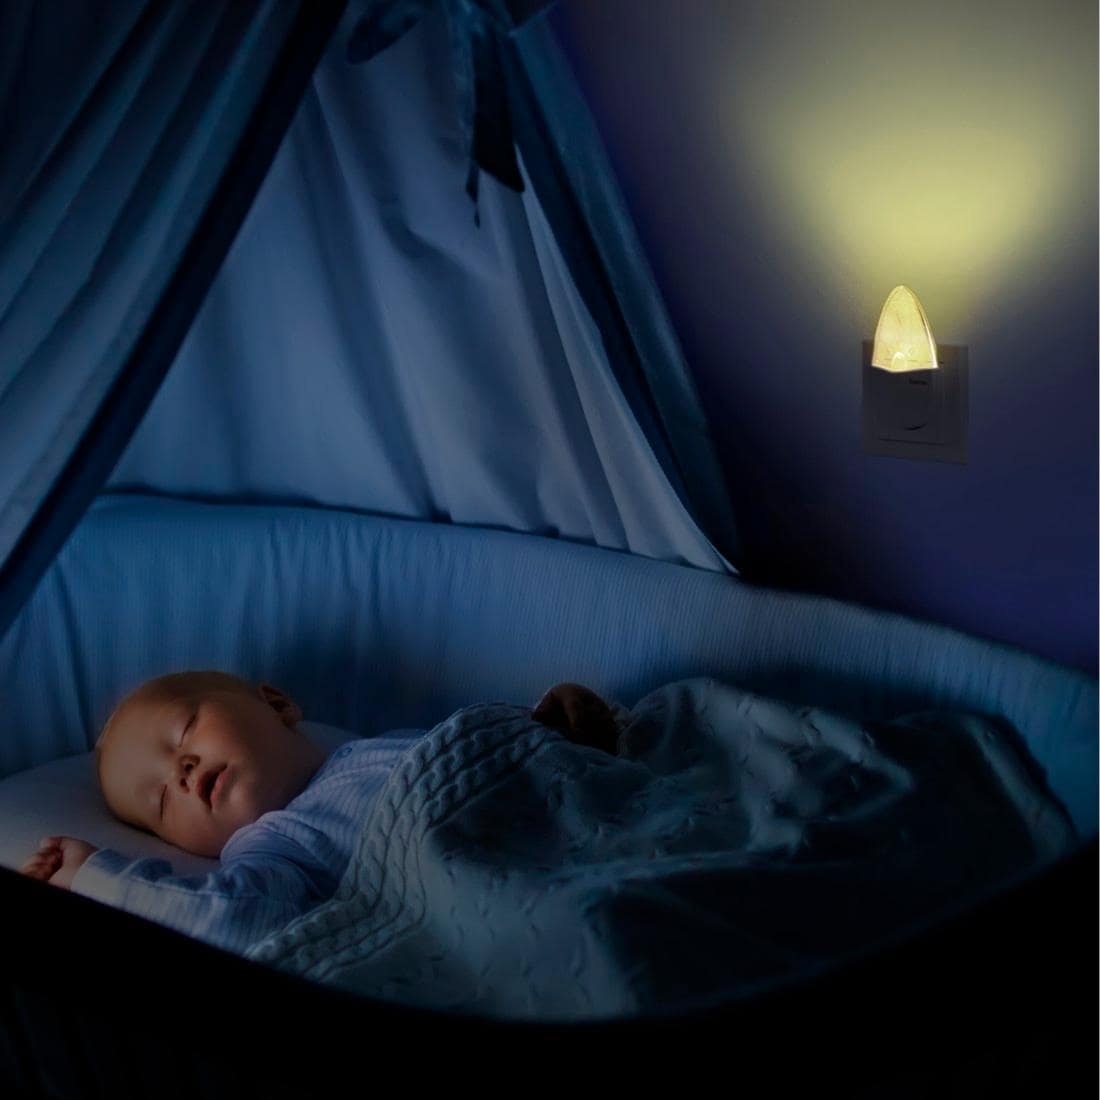 Hama LED Nachtlicht »Nachtlampe Steckdose für Baby, Kinder, Schlafzimmer, Bernstein«